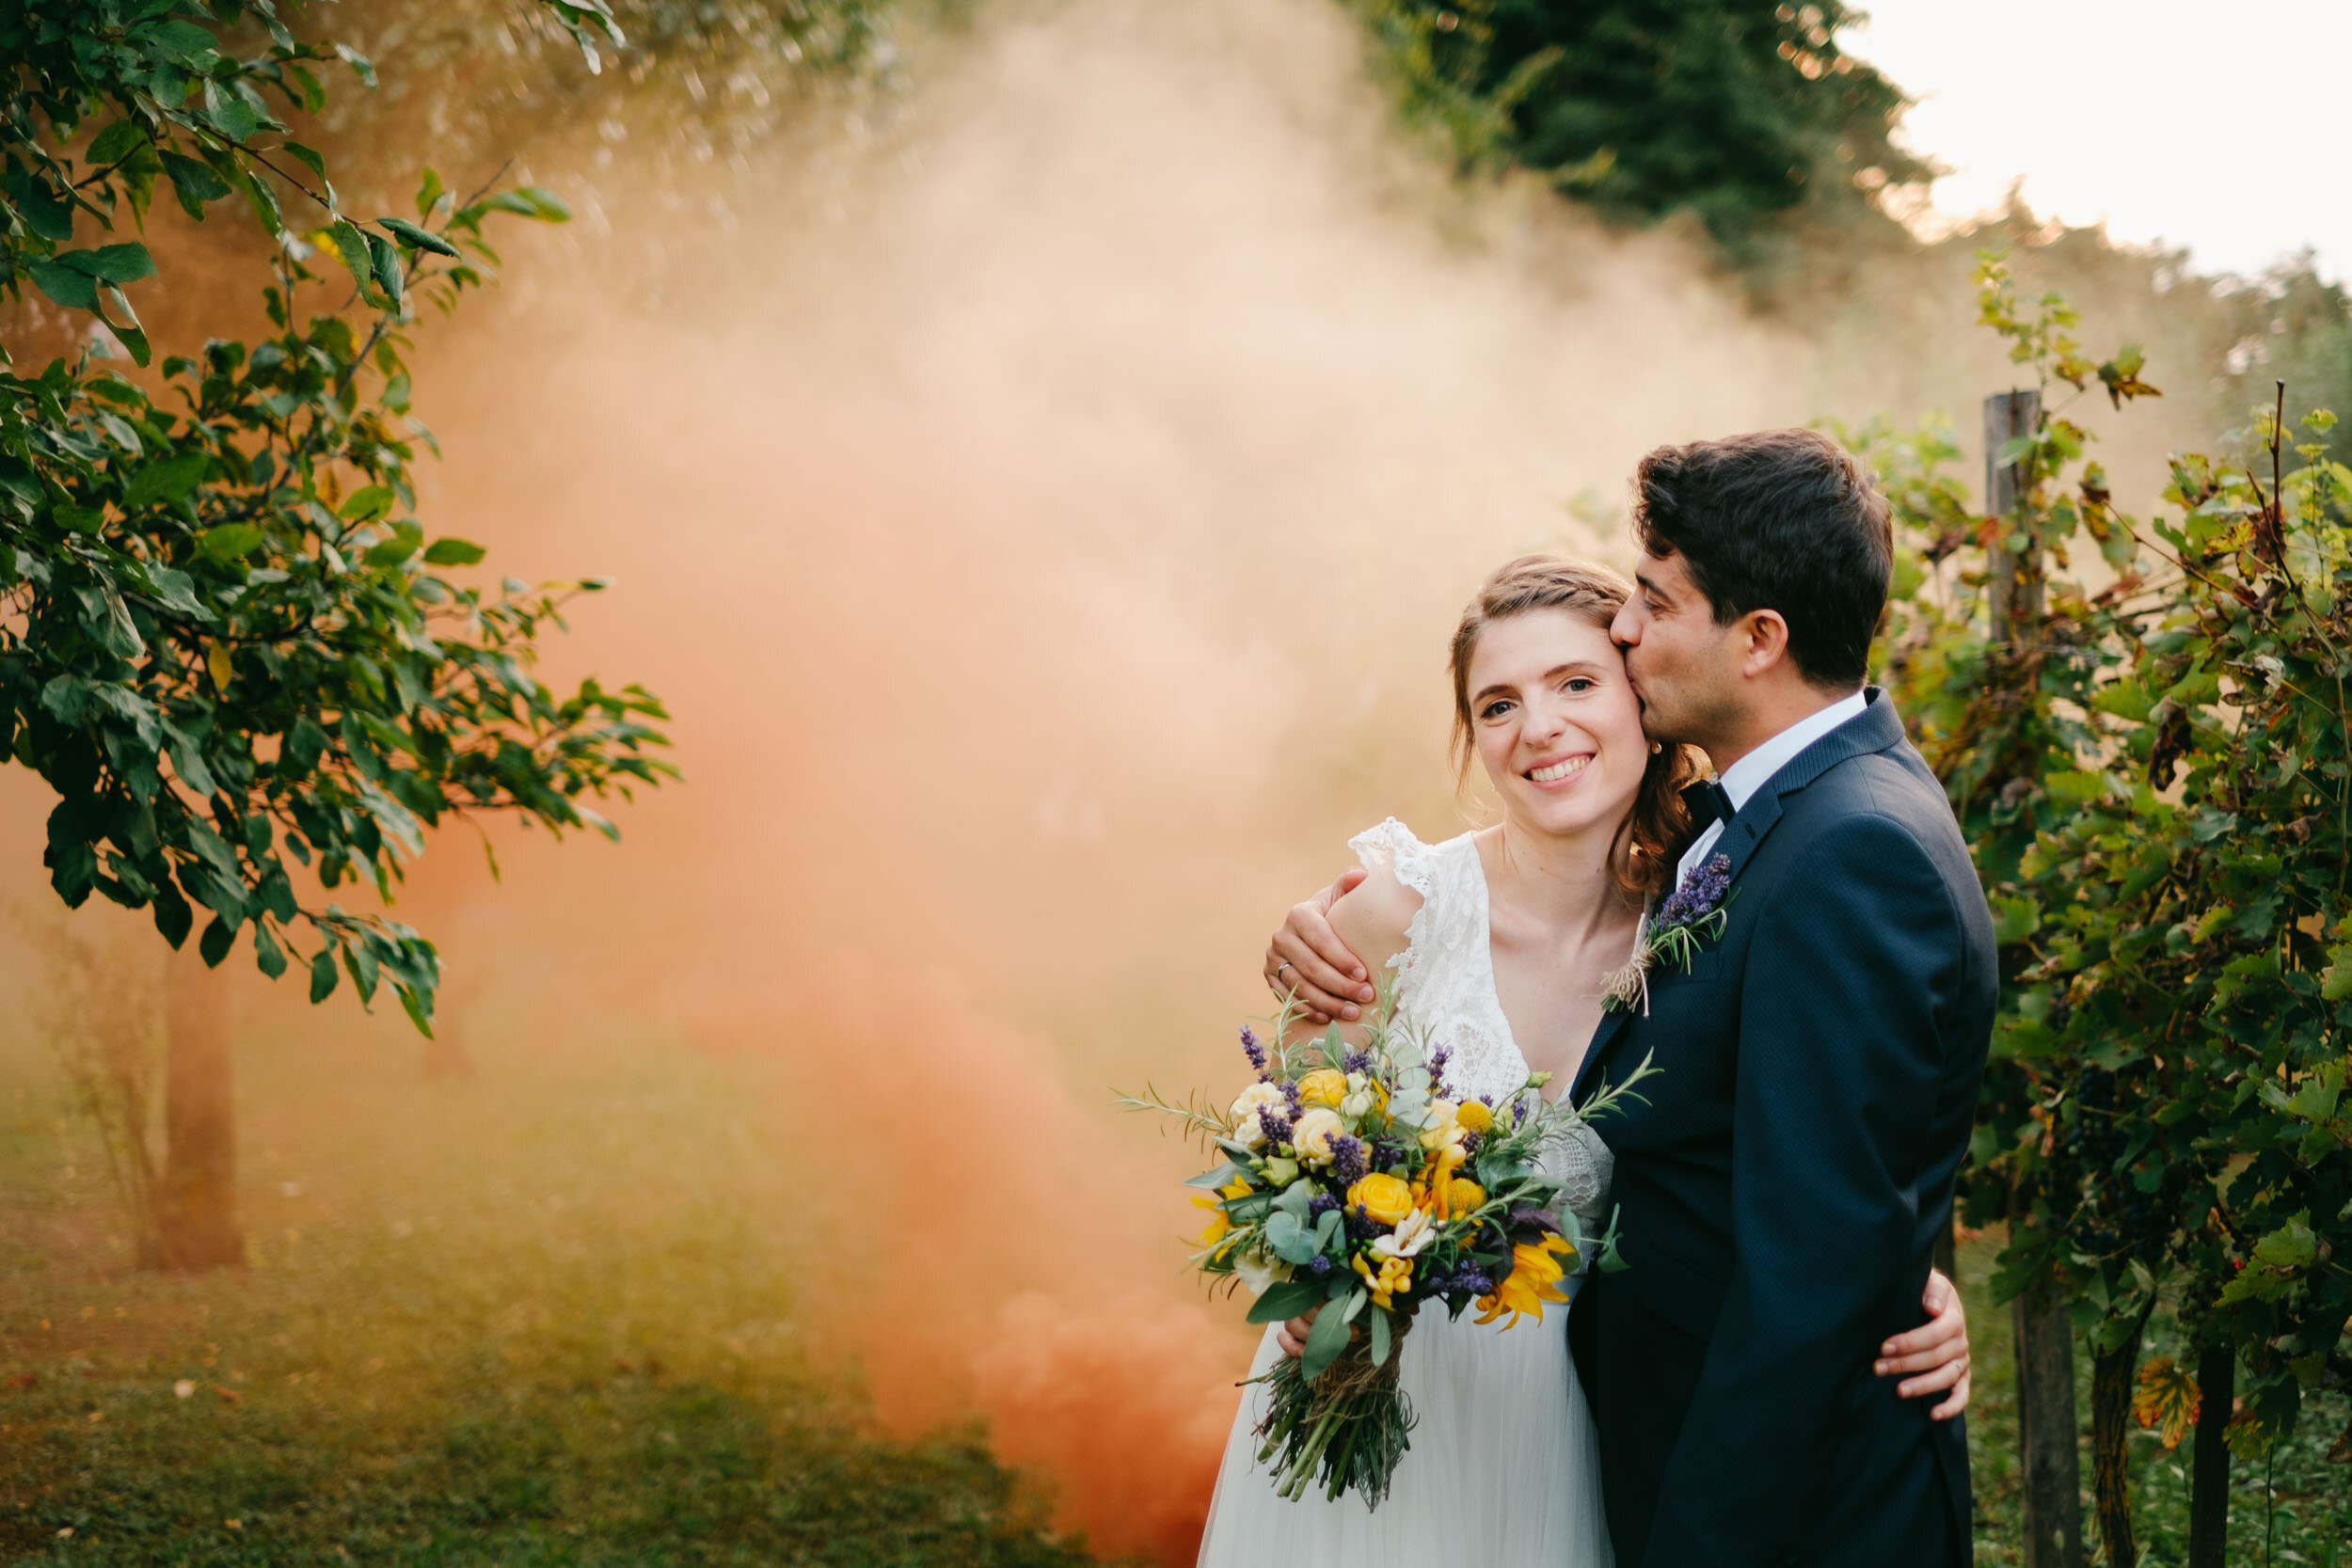 Színes füstbomba - füstgránát - az esküvői fotózáson (Polány, Babérliget Kúria)